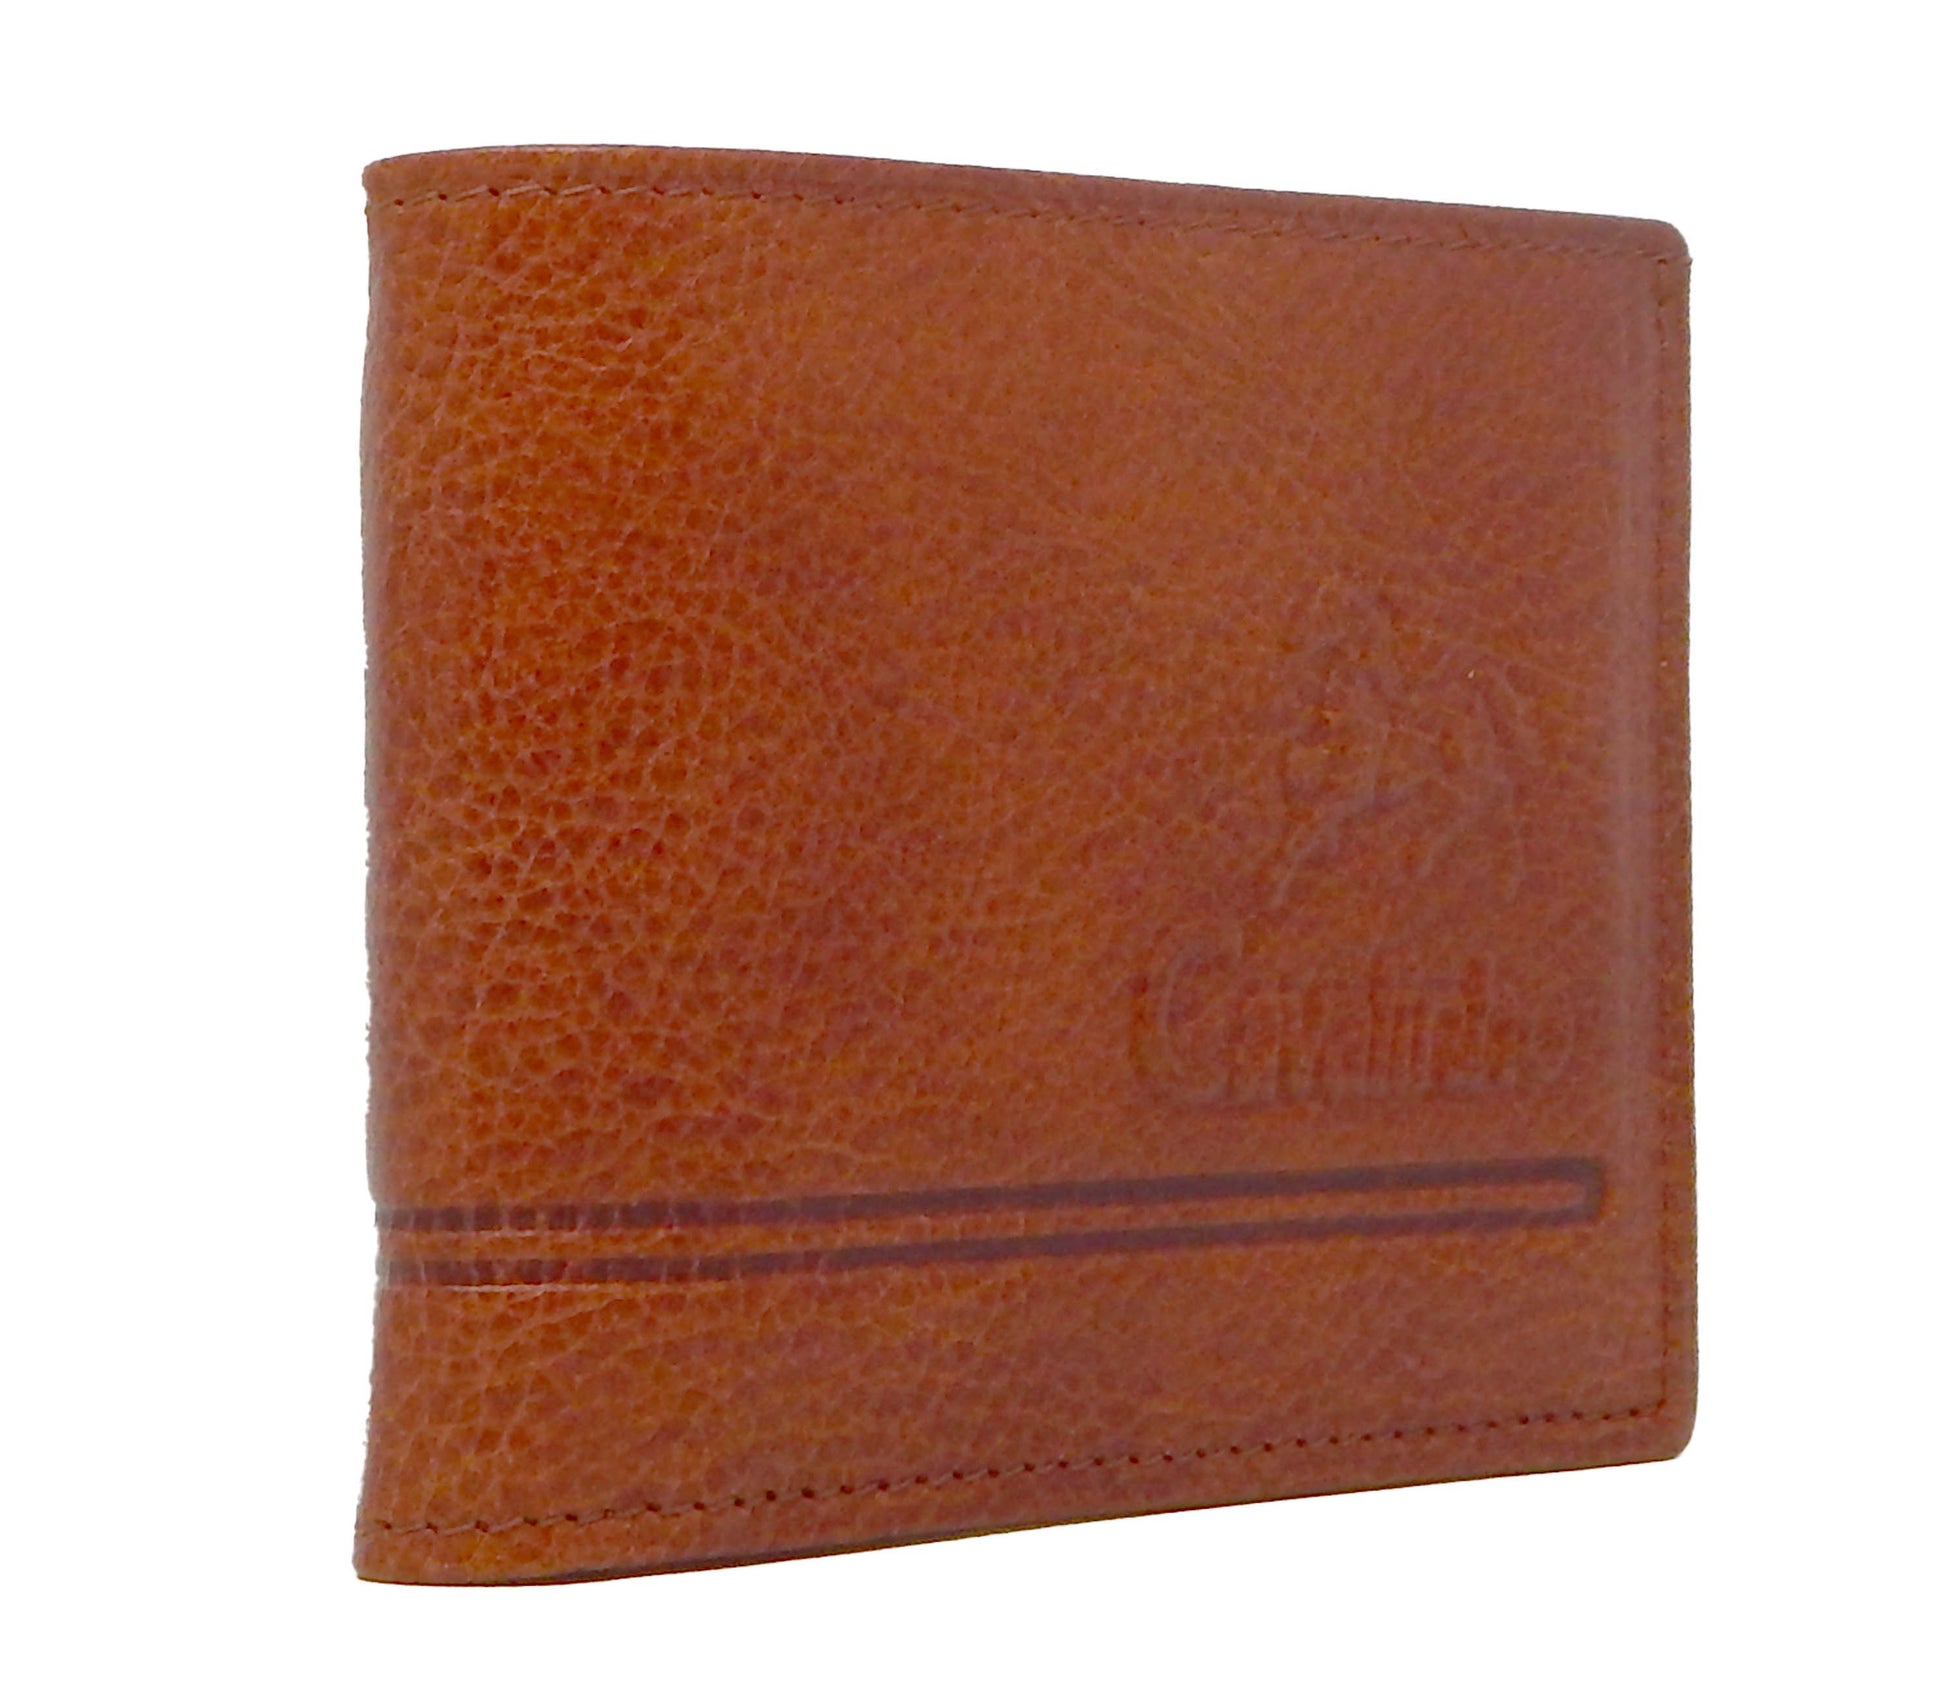 Cavalinho Men's Trifold Leather Wallet - SaddleBrown - 28610517.13.99_1